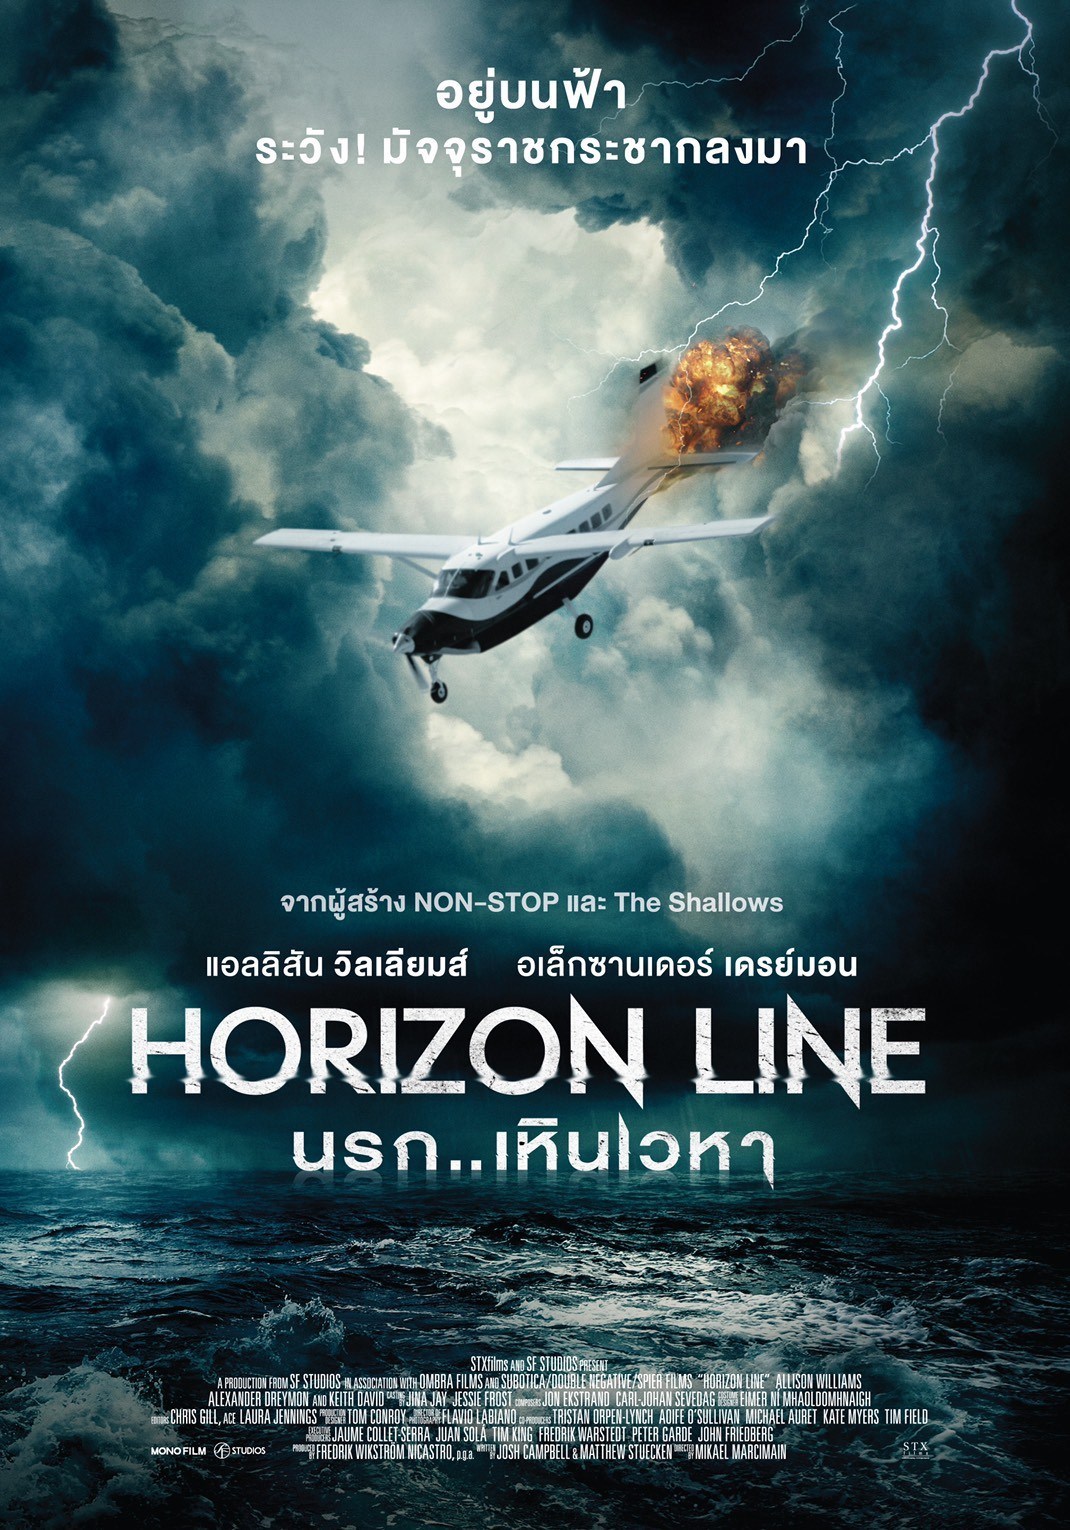 [รีวิว] Horizon Line นรก..เหินเวหา – หนุ่มกรุบซังกะตายกับยัยวุ่นวายขับเครื่องบิน